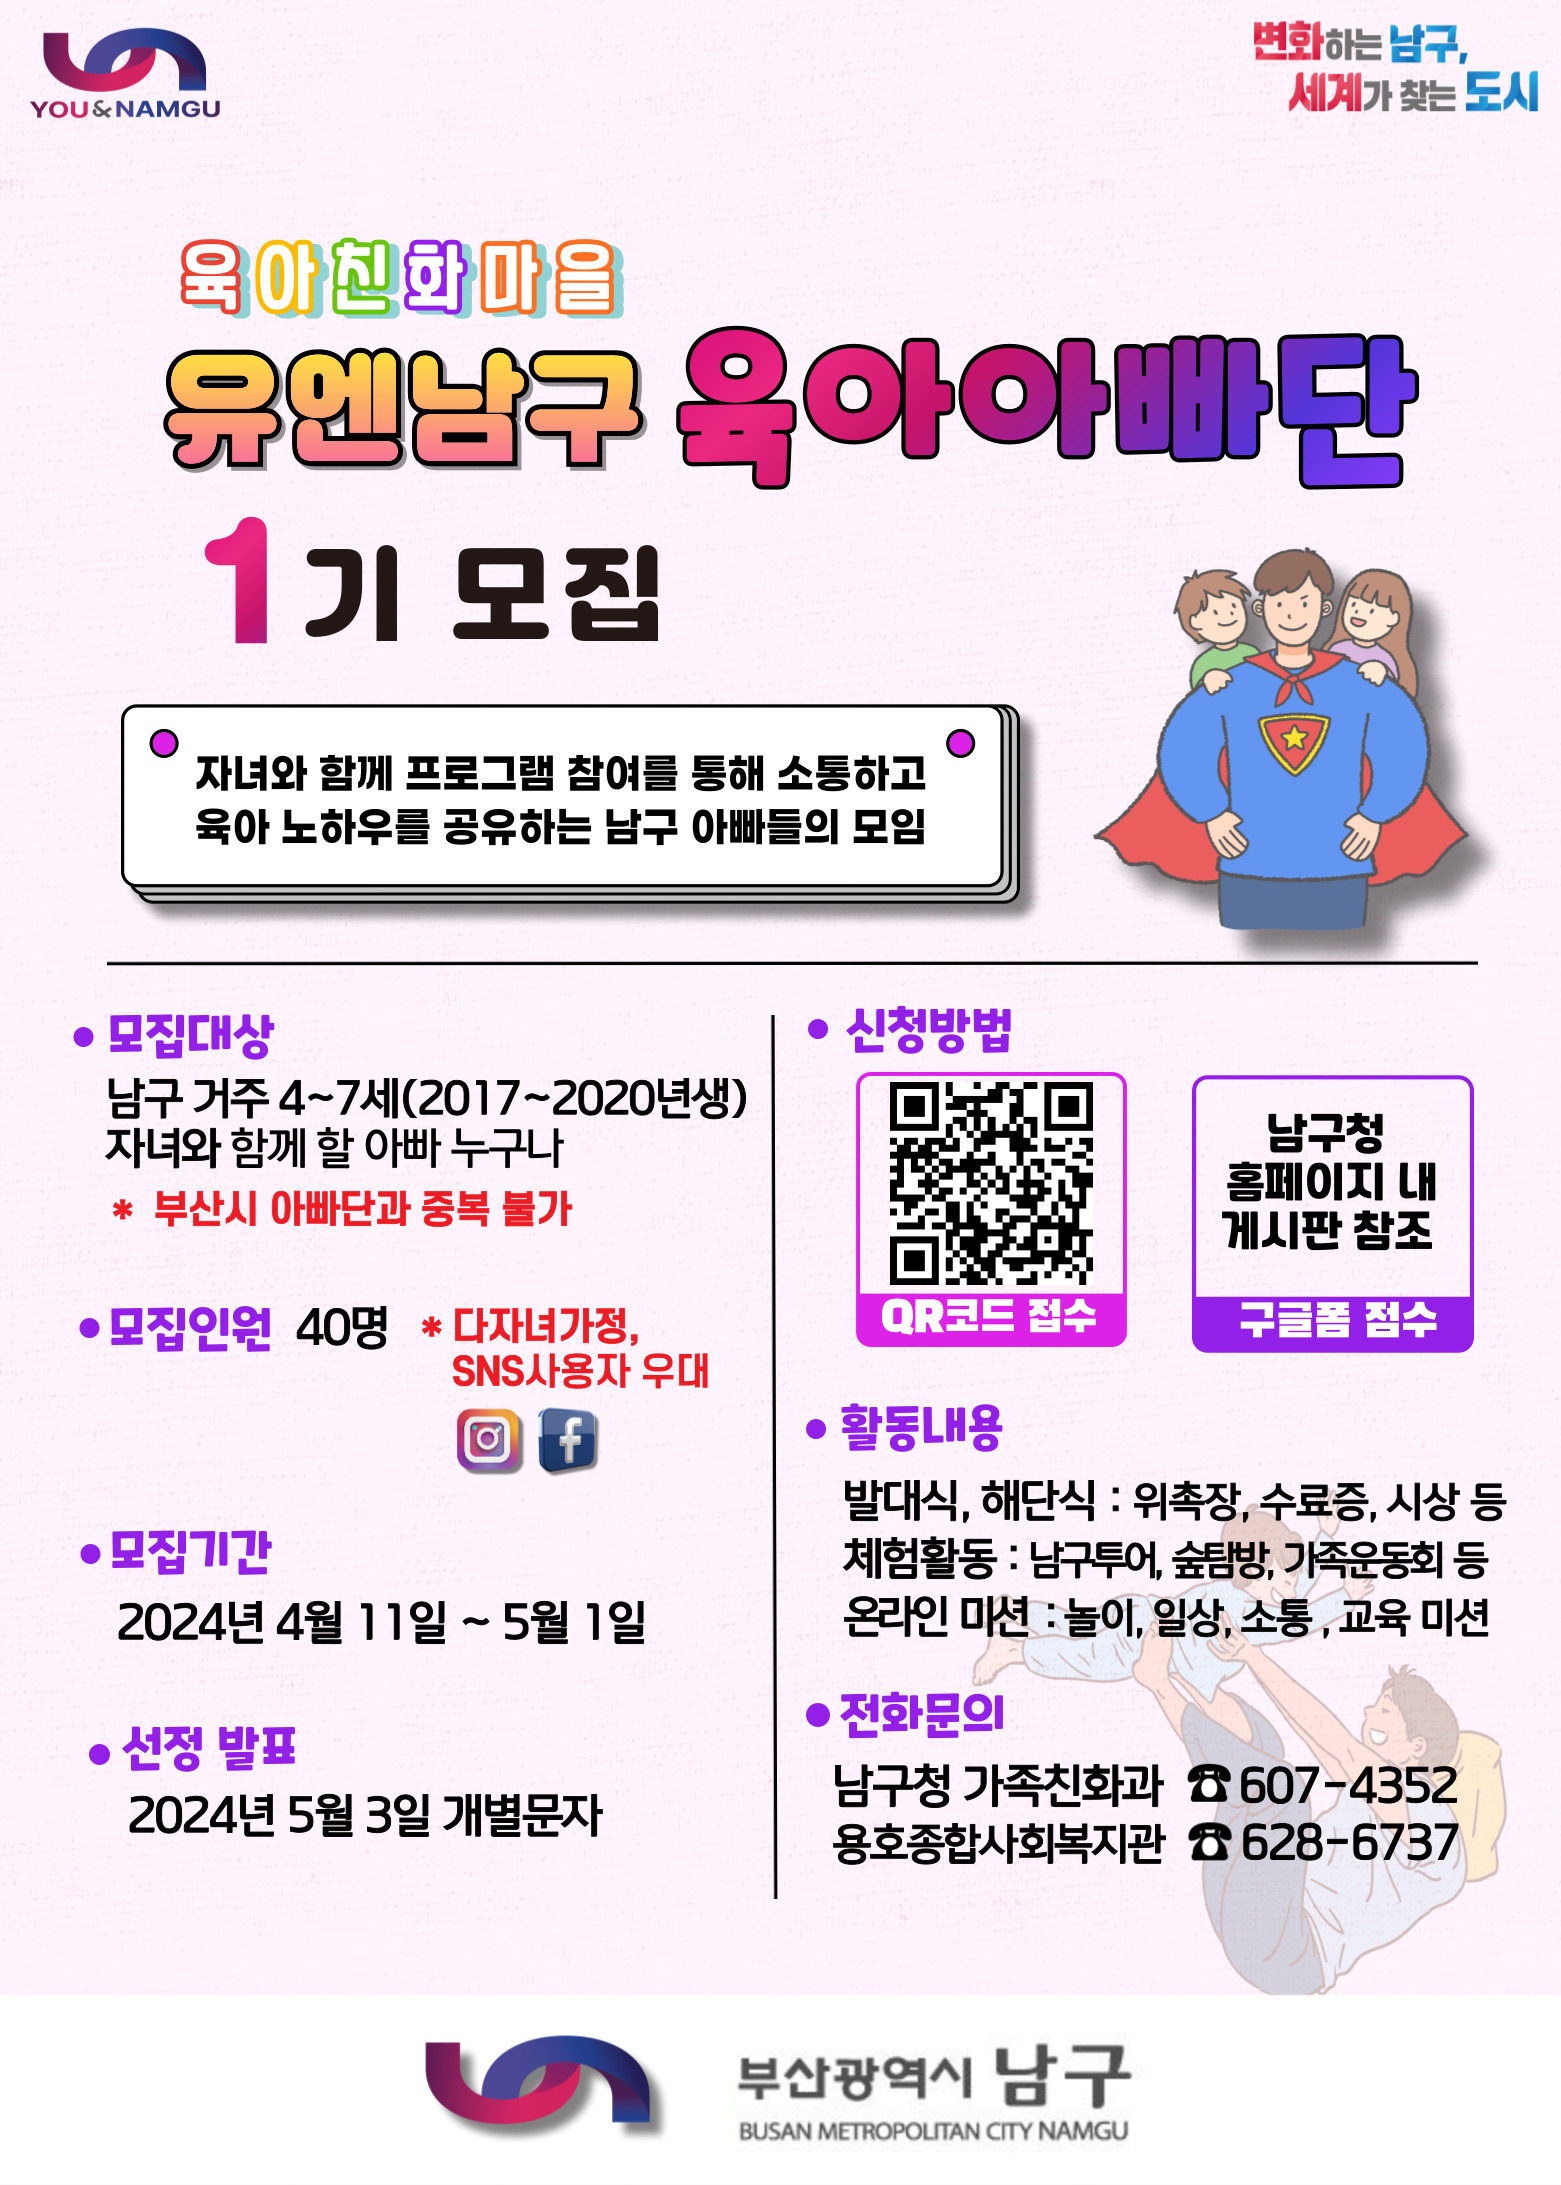 「유엔남구 육아아빠단」 1기 모집 홍보0